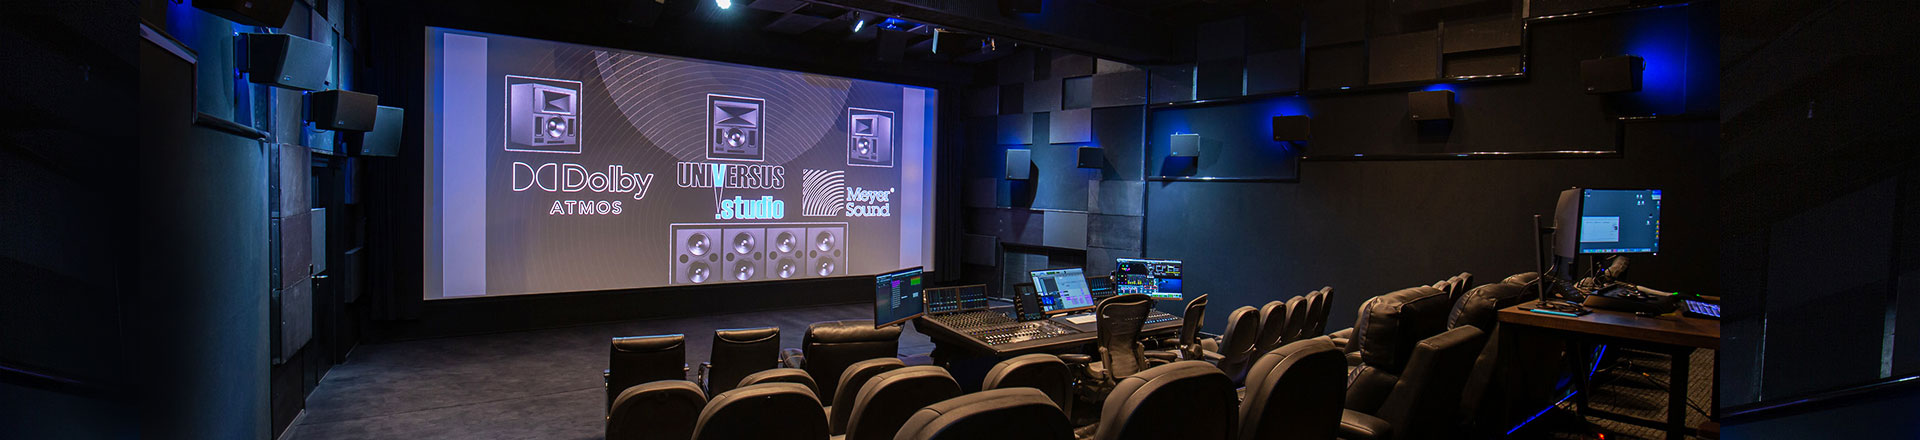 Universus Studio z Dolby Atmos Cinema. Instalacja Meyer Sound